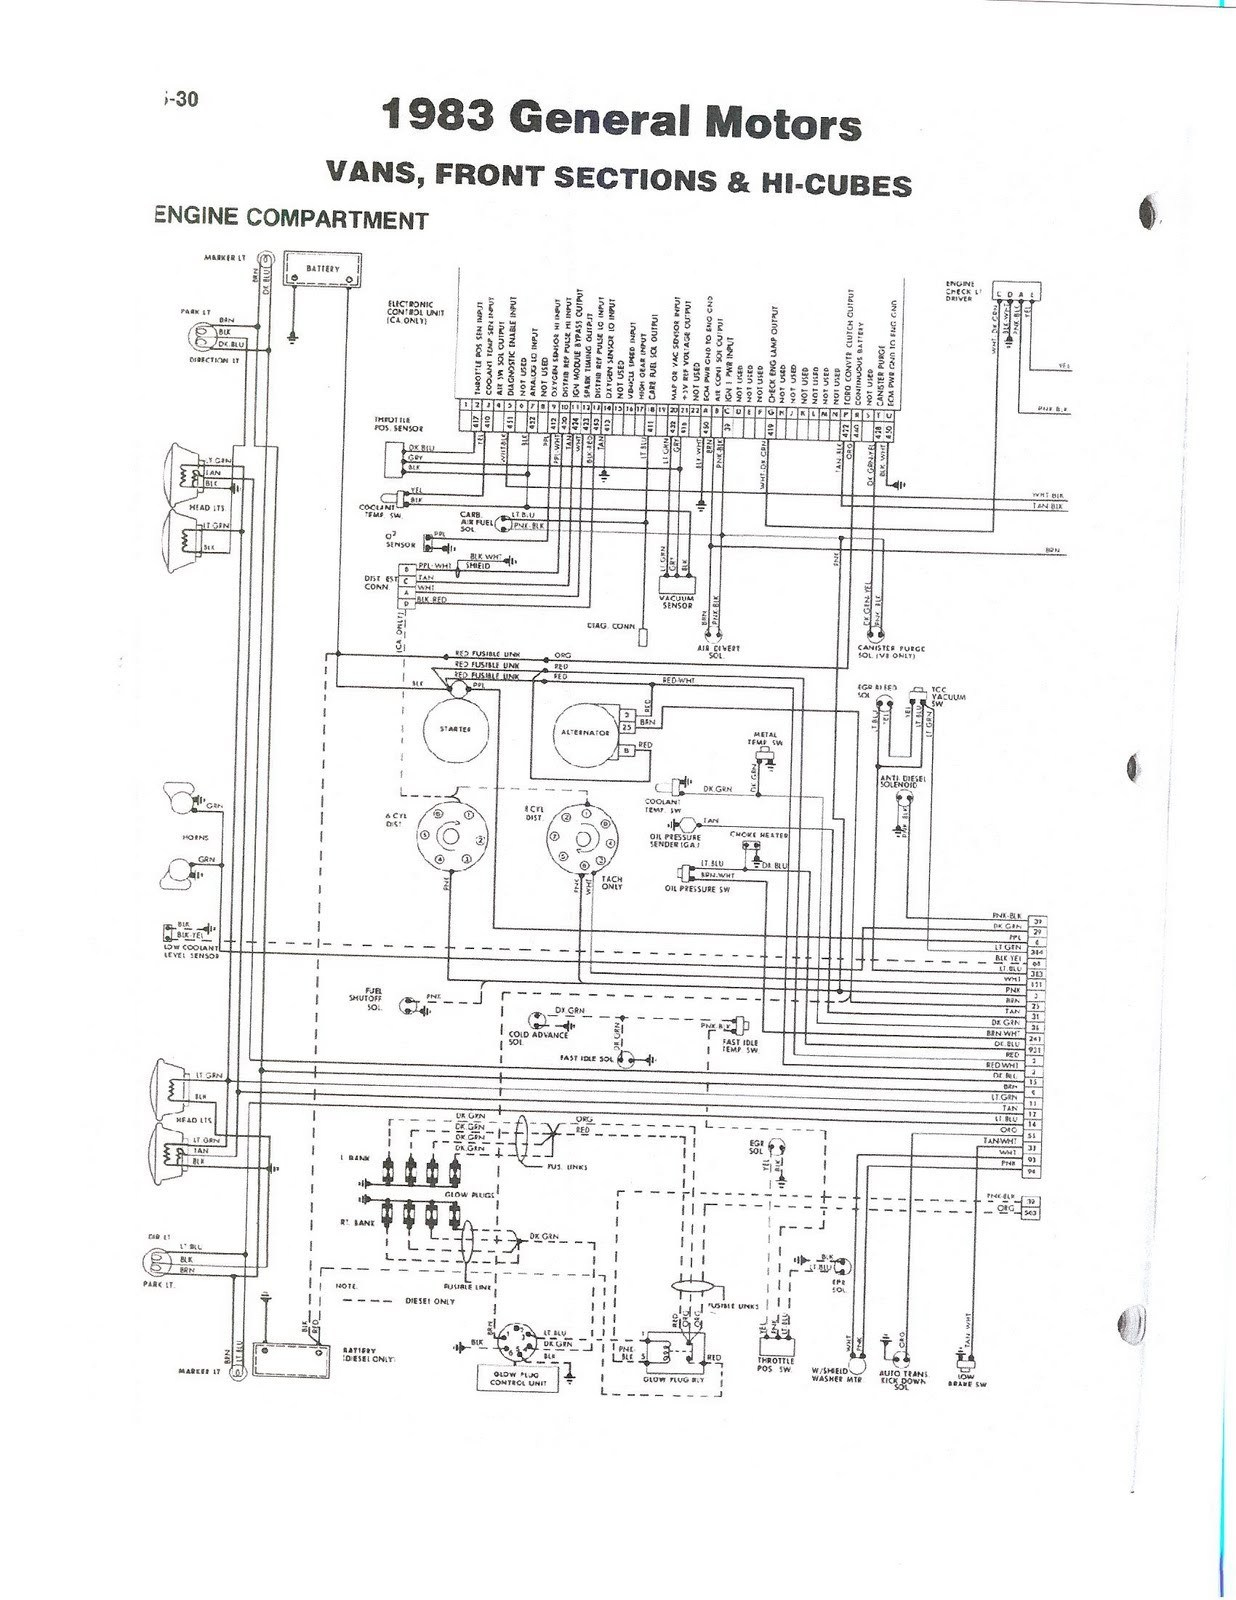 2000 Coleman Pop Up Camper Wiring Diagram | Wiring Diagram - Coleman Pop Up Camper Wiring Diagram